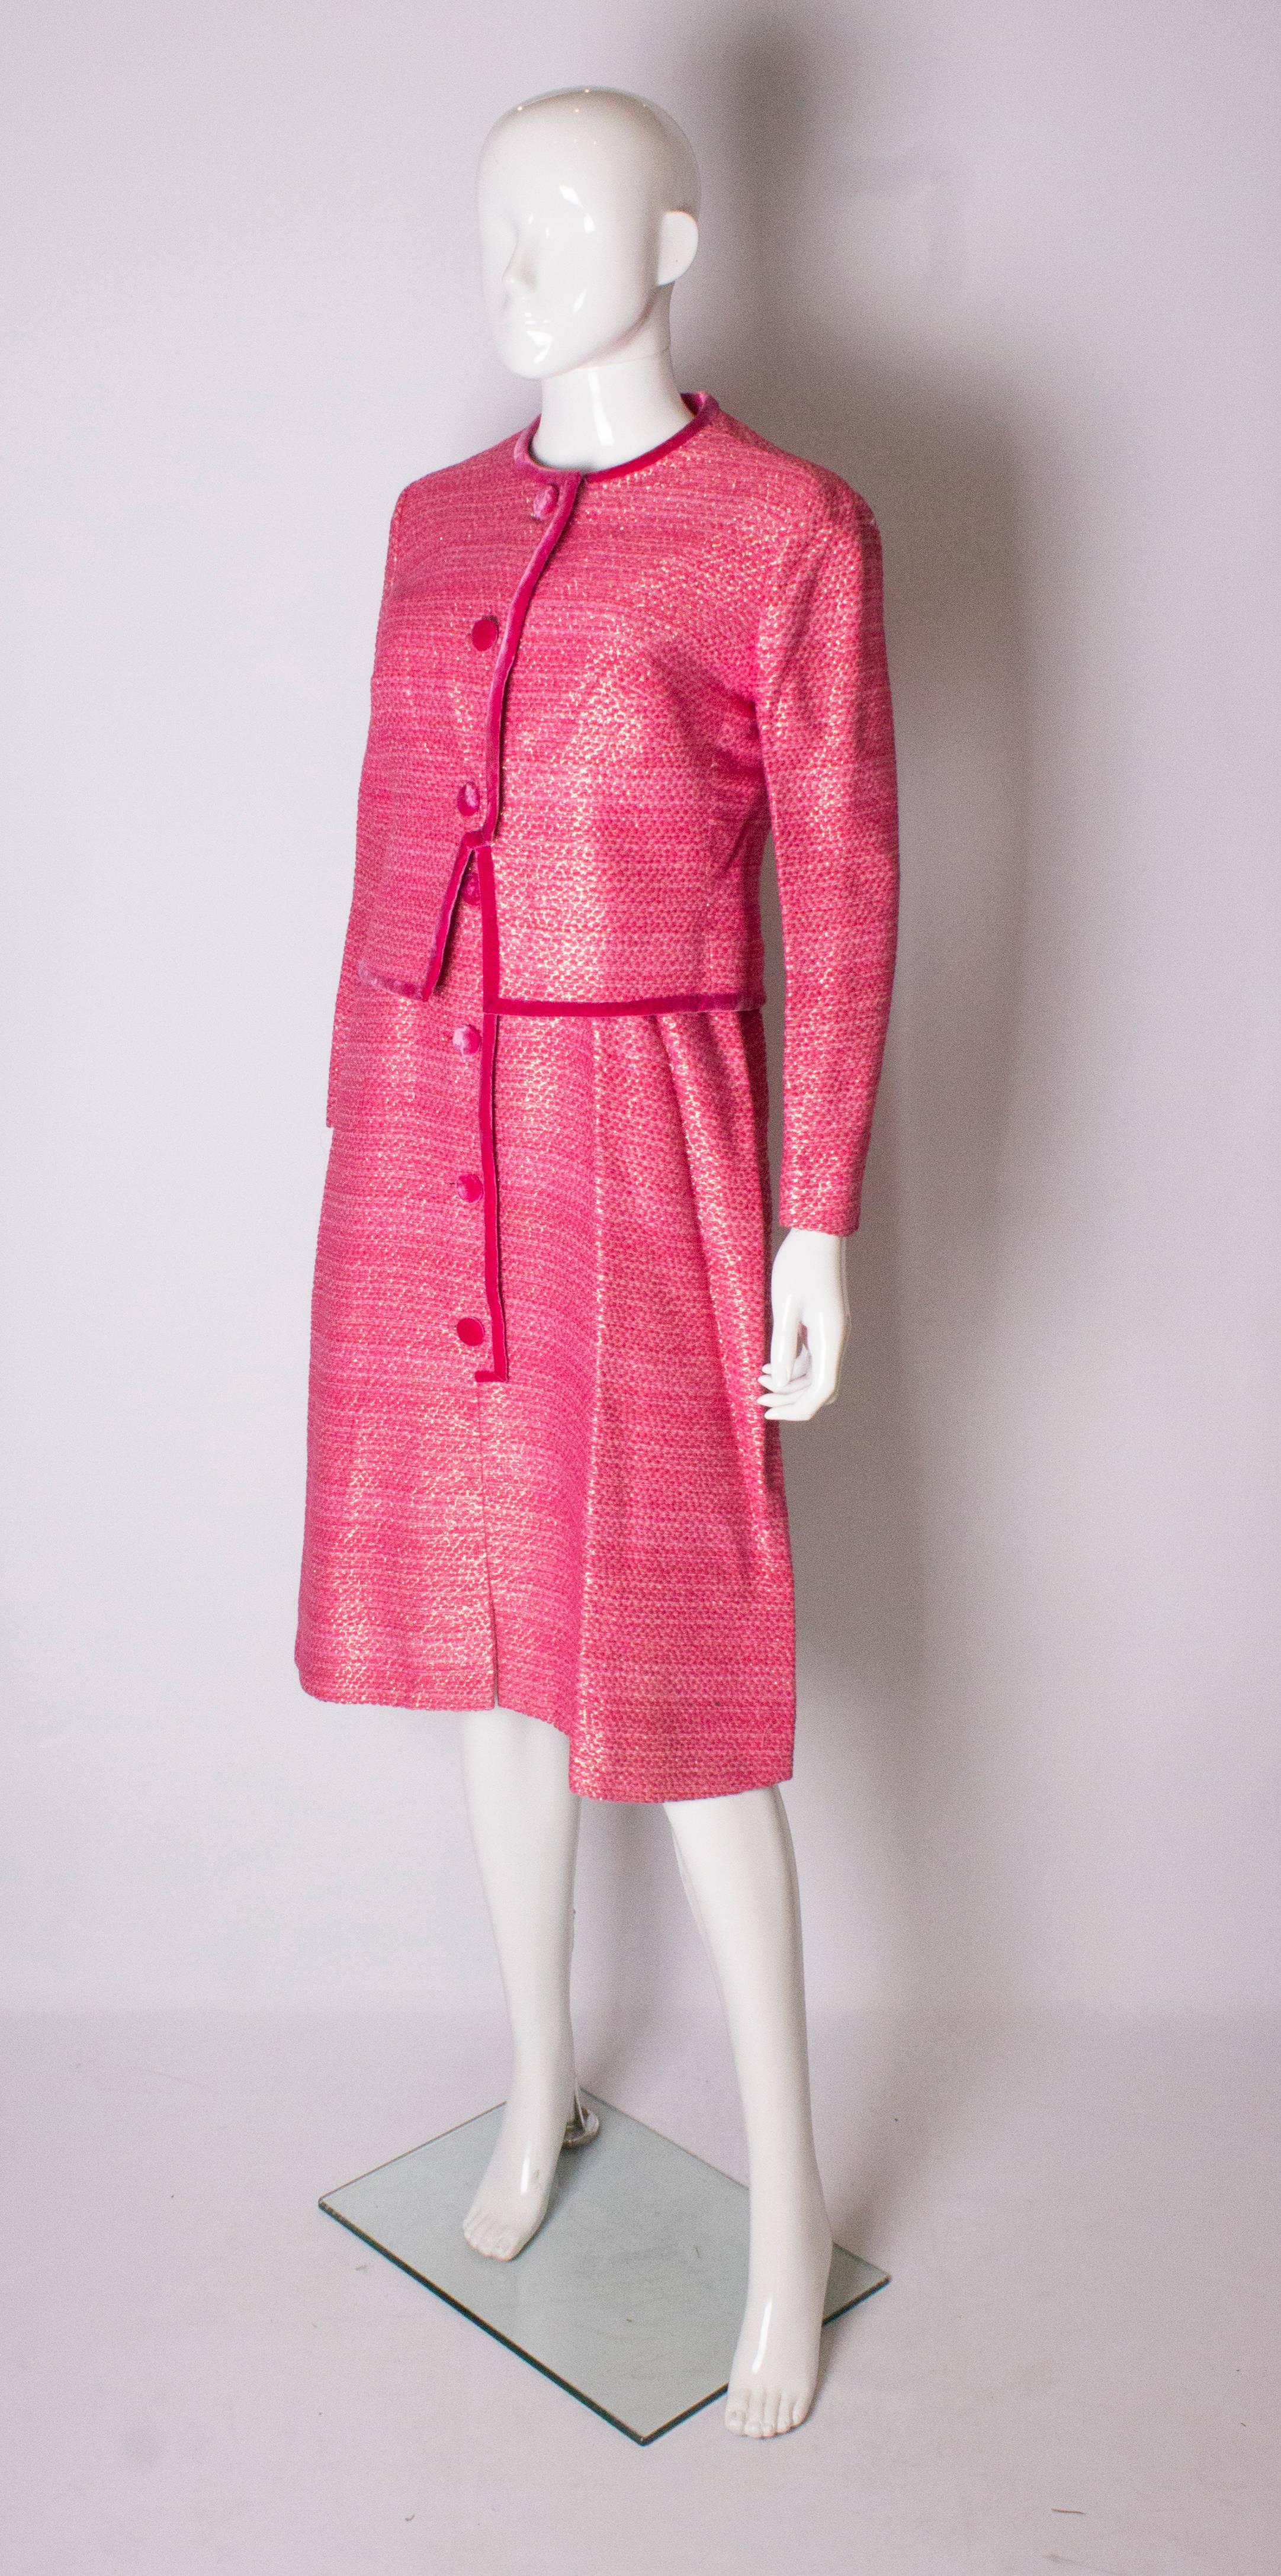 hot pink dress coat